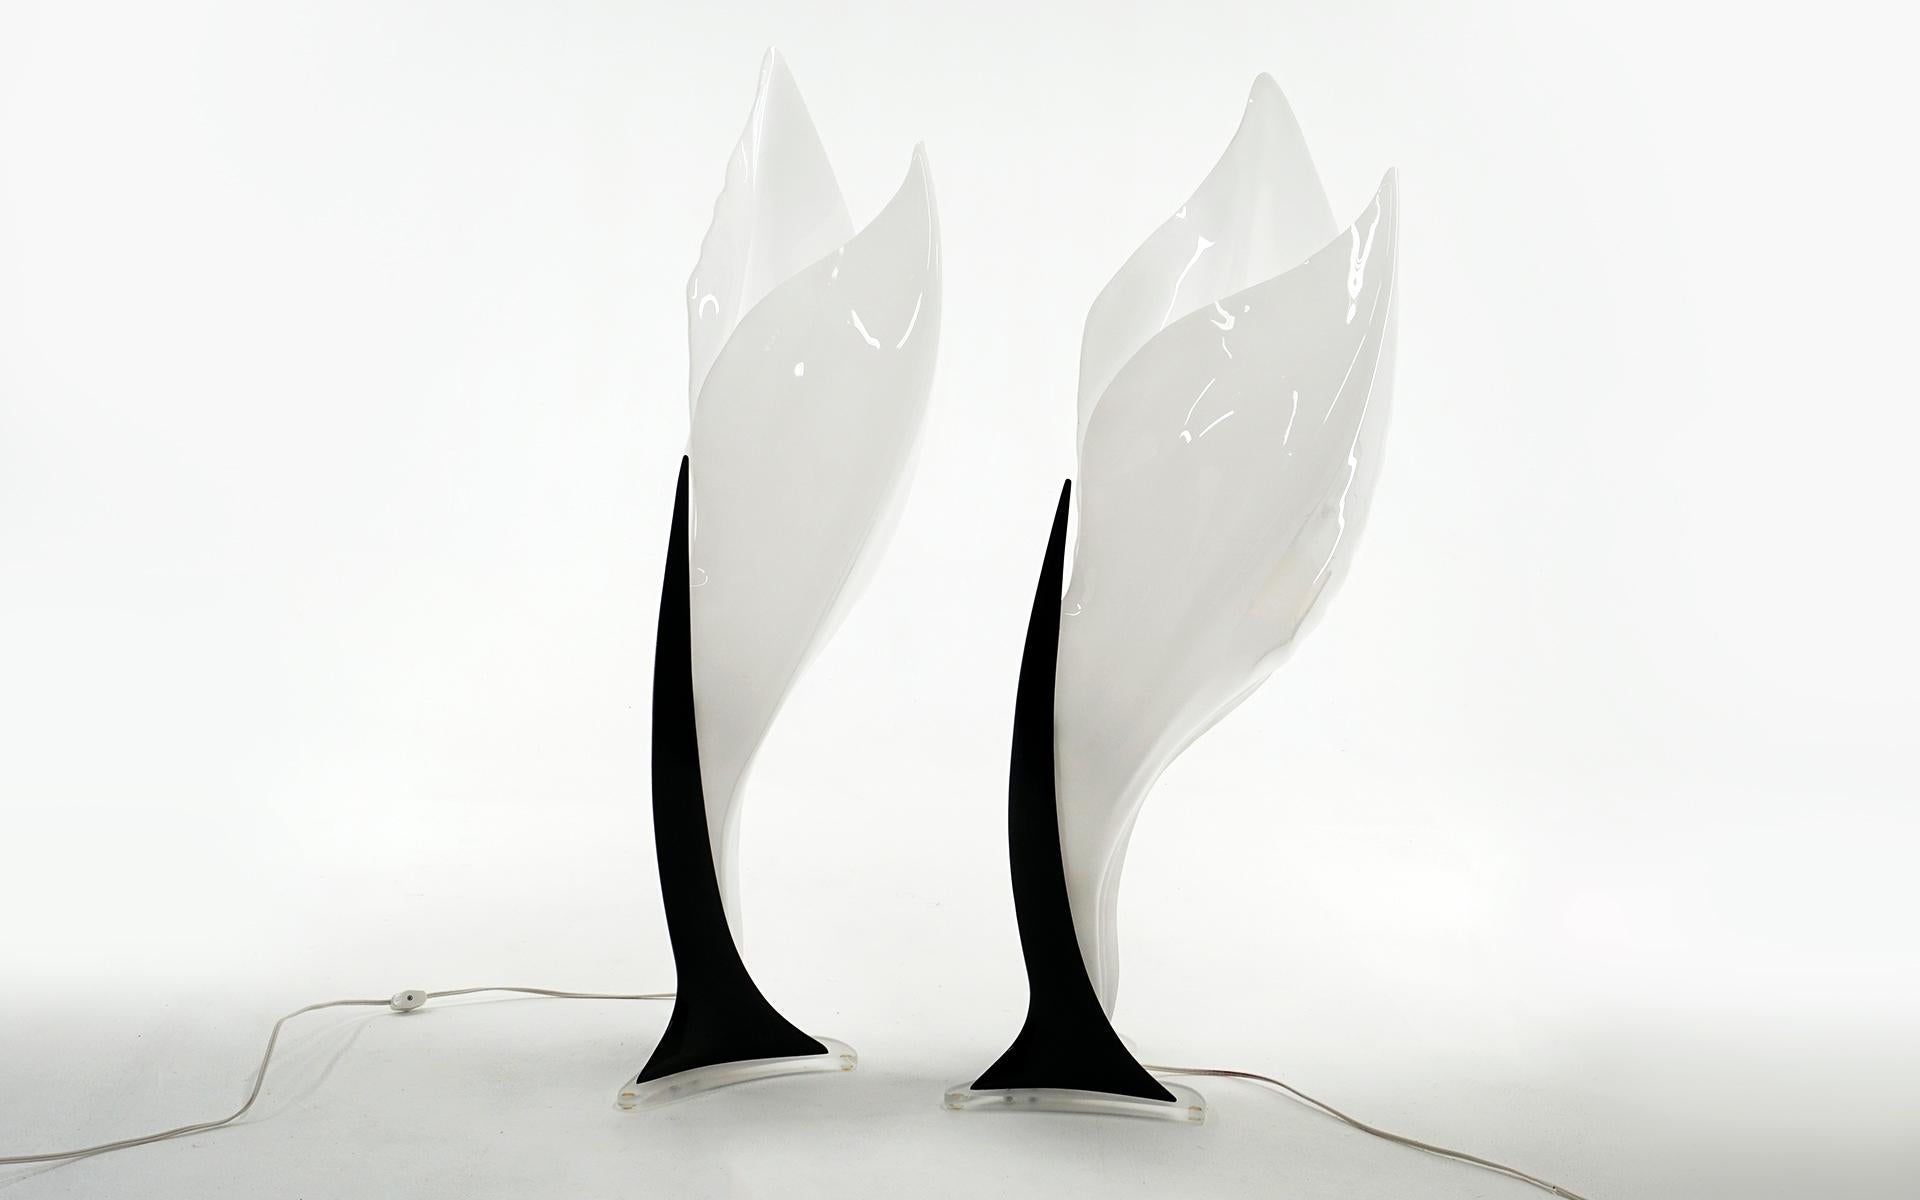 Paire de grandes lampes de table par Roger Rougier, Canada, années 1970. Lucite blanche et noire / Acrylique. D'une taille de trente-huit pouces, c'est une paire étonnante et frappante. Nous avons possédé de nombreuses lampes Rougier dans le passé